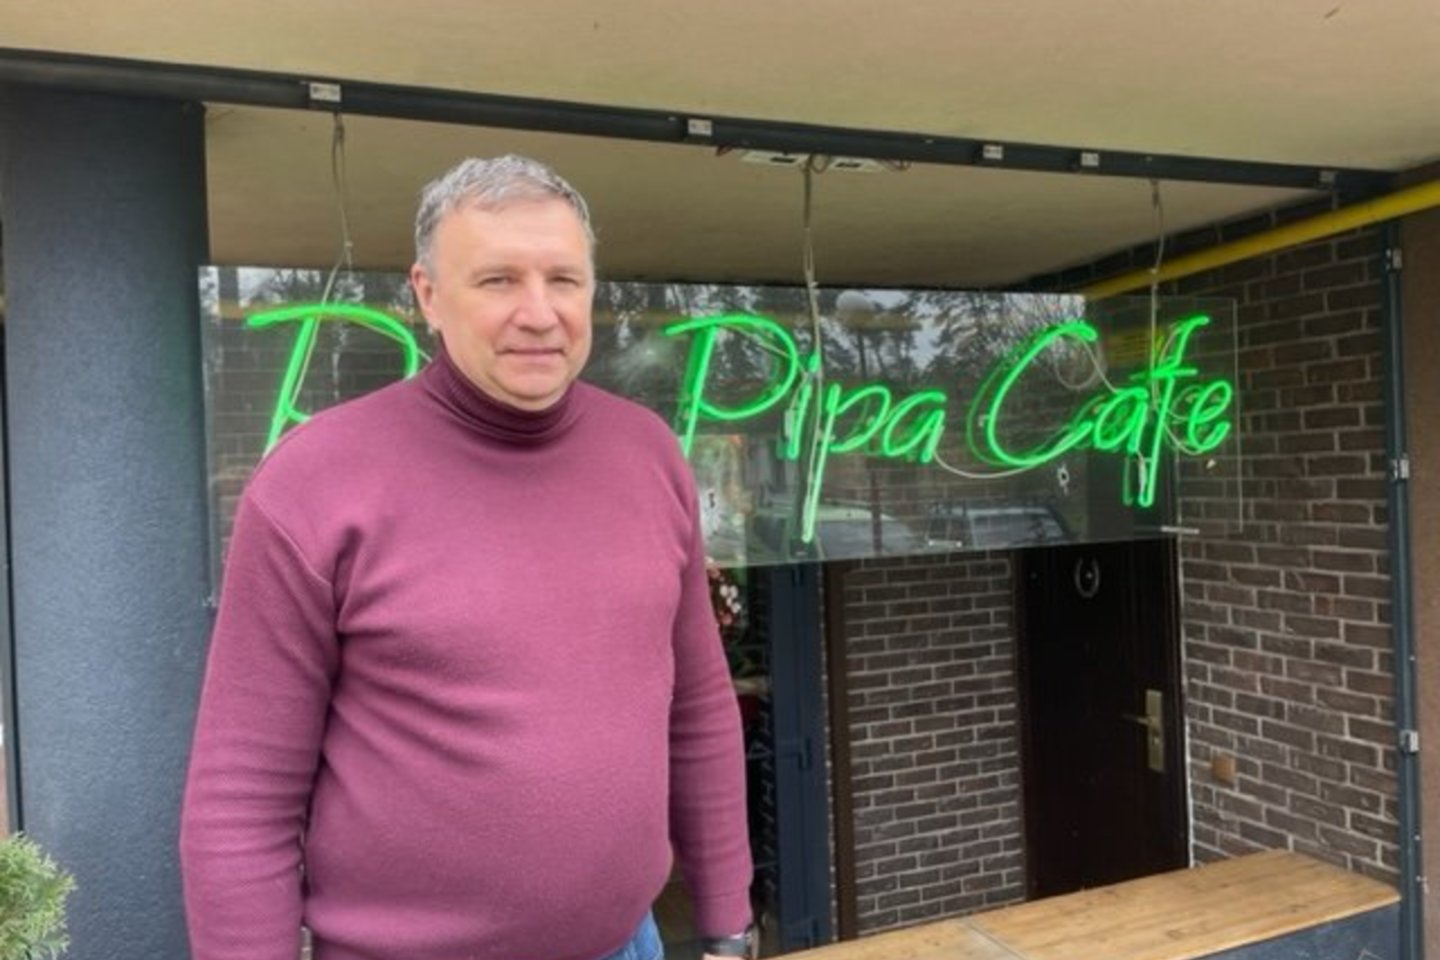 Buvęs A.Sabonio varžovas, Kijevo „Budivelnik“ krepšininkas J.Dolgovas dabar vadovauja Vorzelio kurorte esančiam nuosavam restoranui „Pipa Pipa Cafe“.<br>E.Butrimo nuotr.